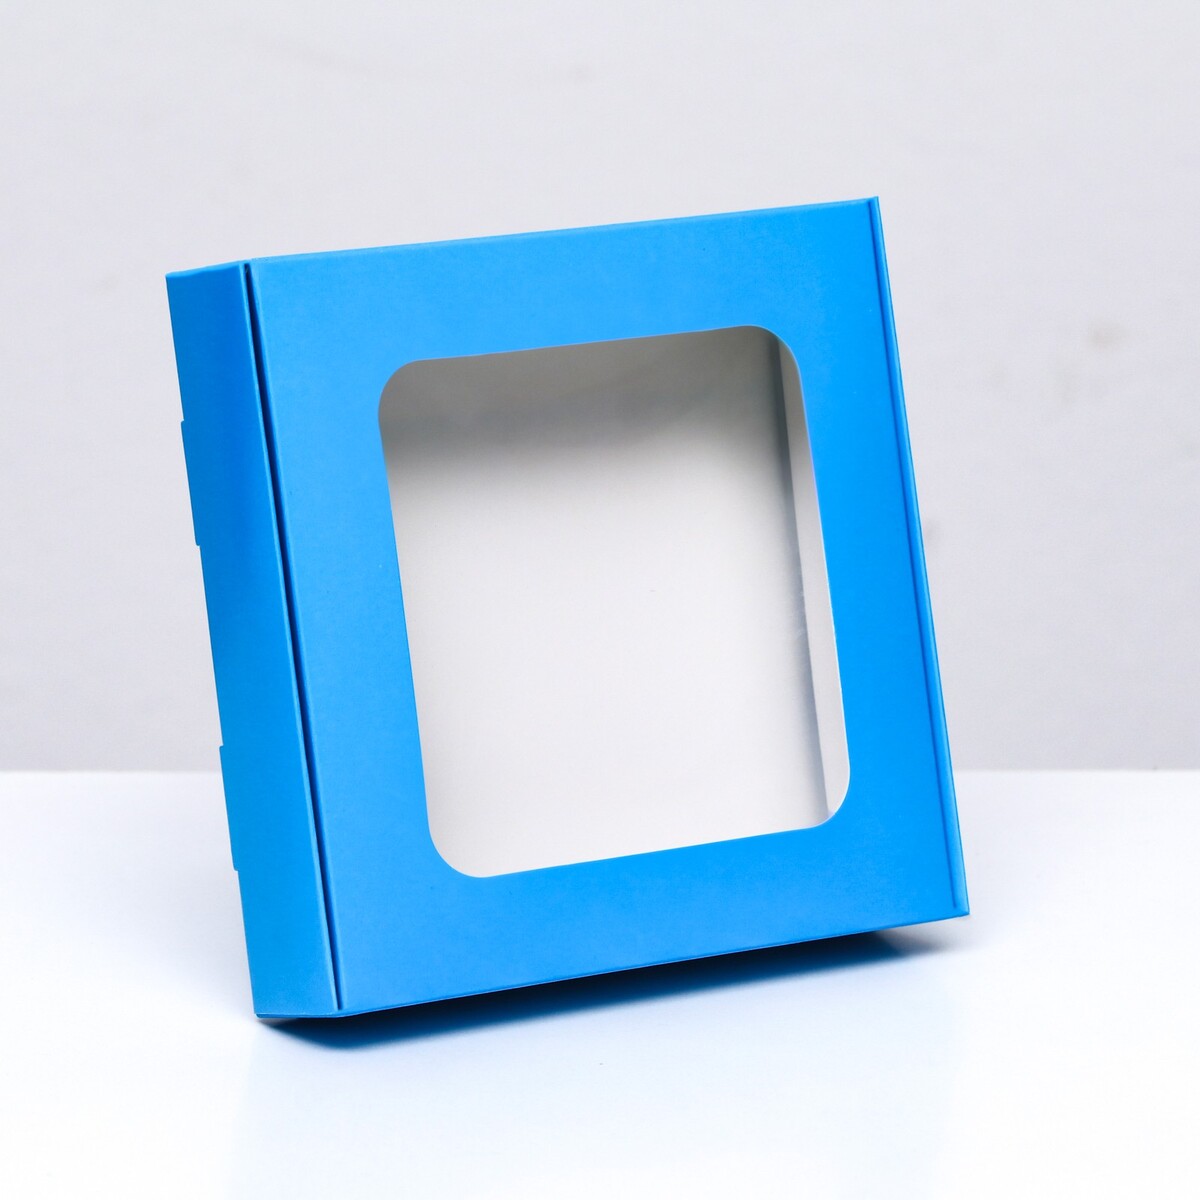 Коробка самосборная с окном синяя, 13 х 13 х 3 см кубики методики зайцева собранные синяя коробка картон